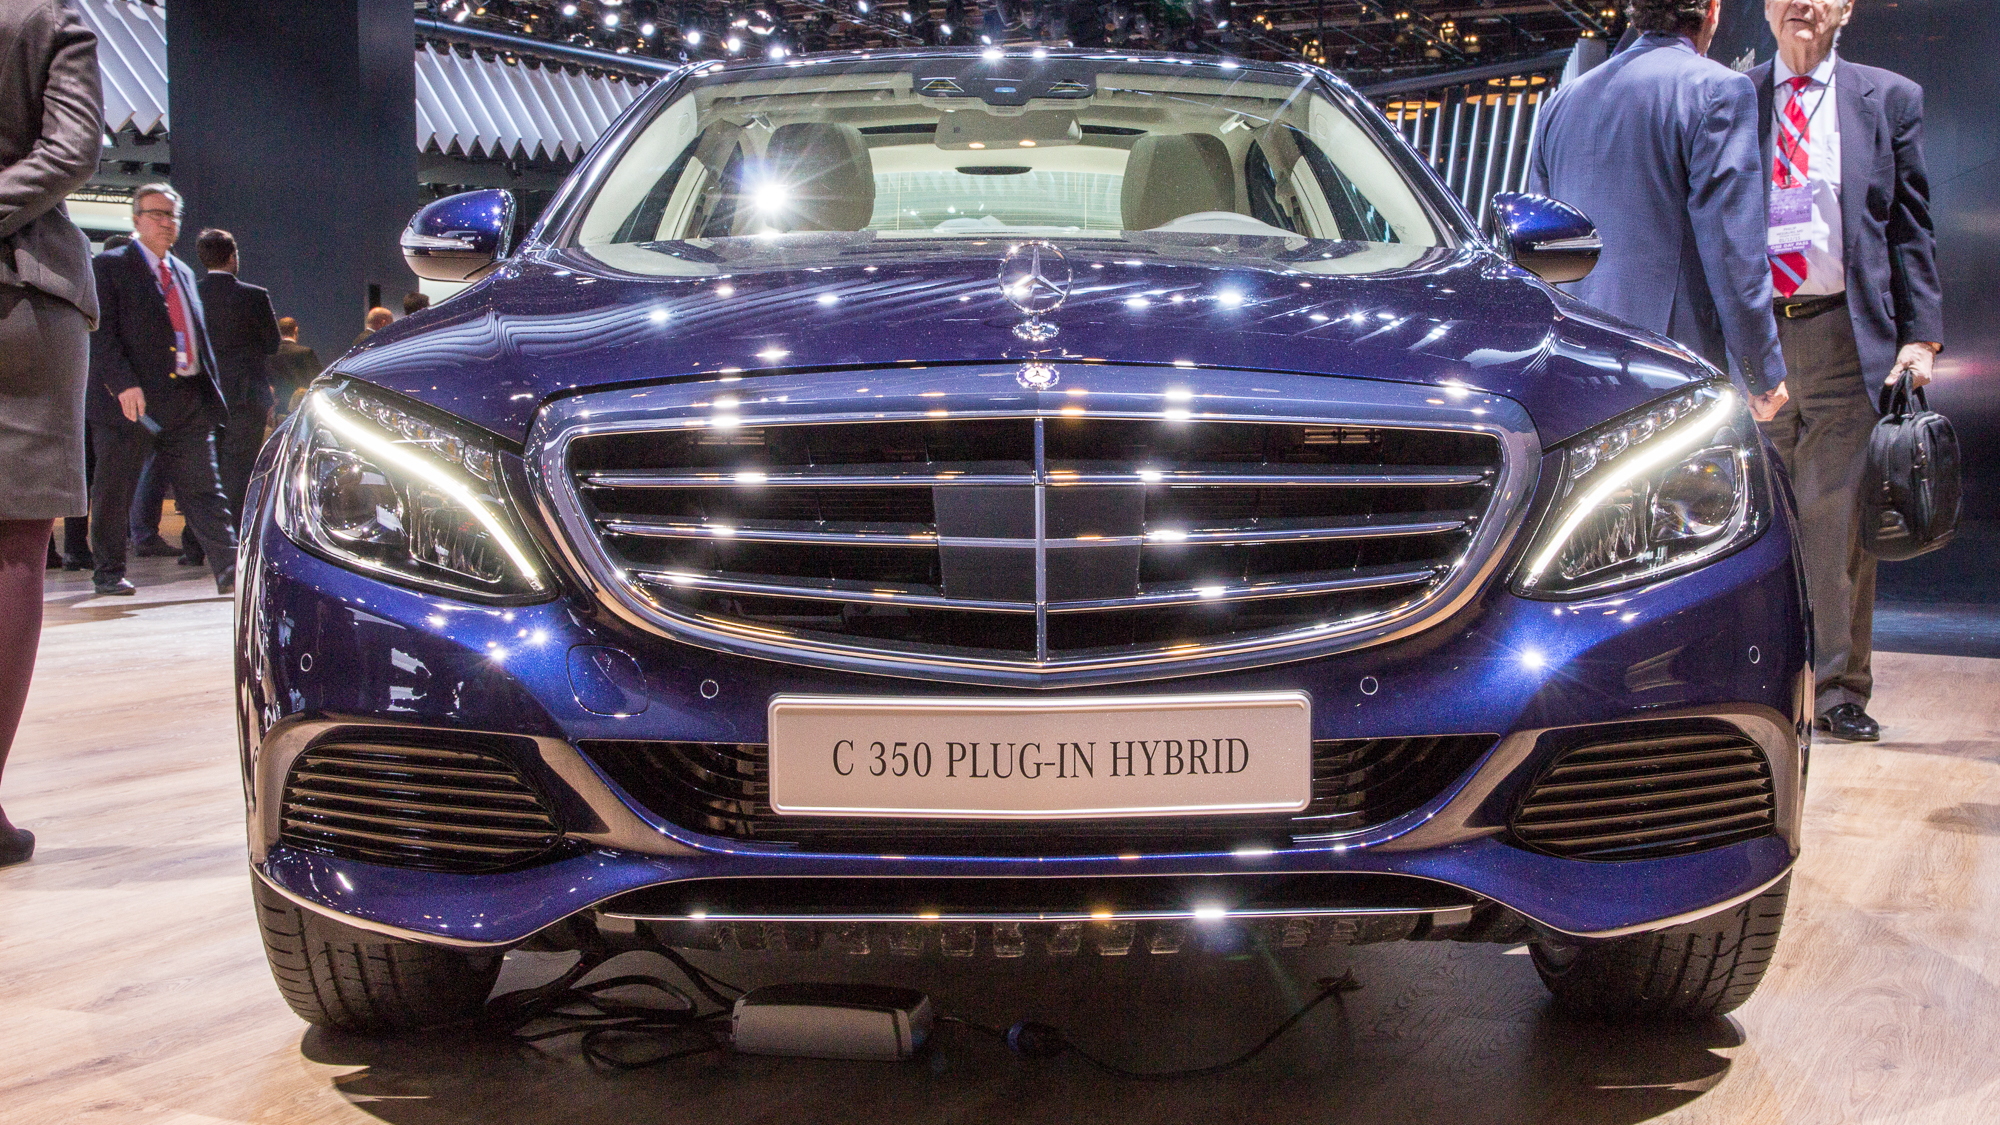 2016 Mercedes-Benz C350 Plug-In Hybrid live photos, 2015 Detroit Auto Show